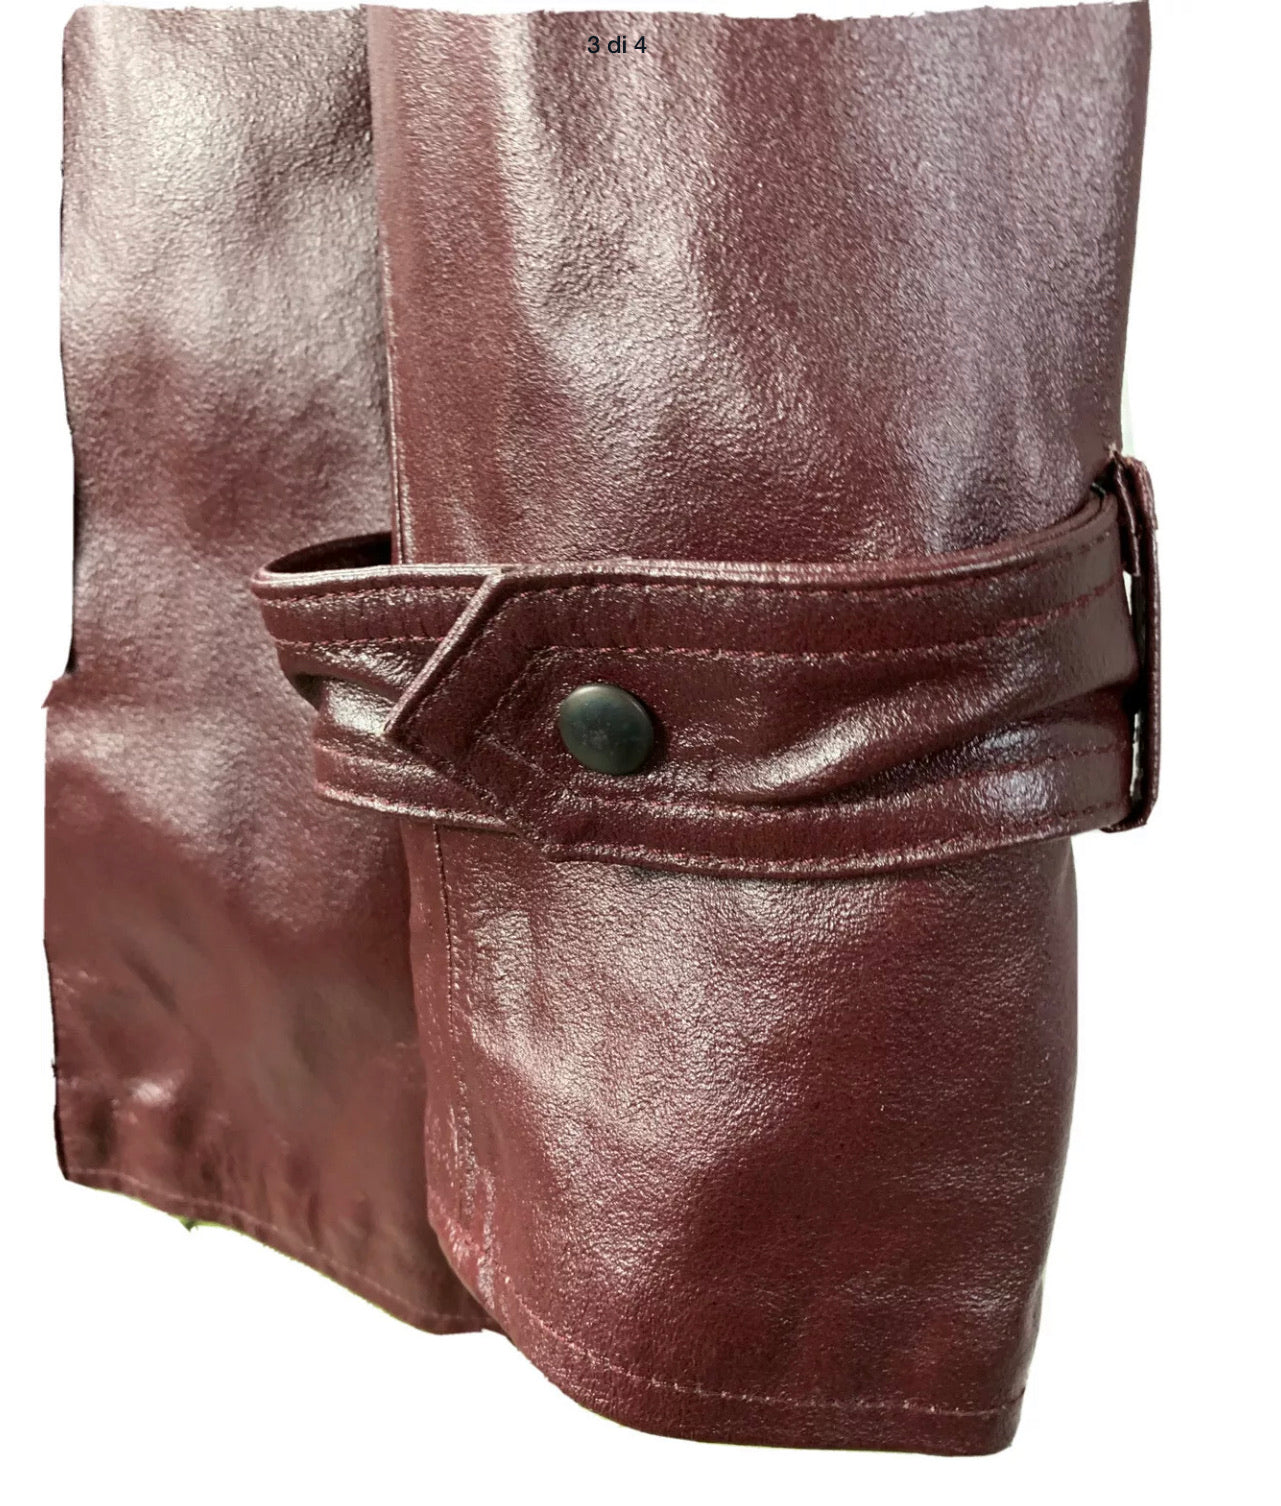 Motivi leather jacket coat size M 